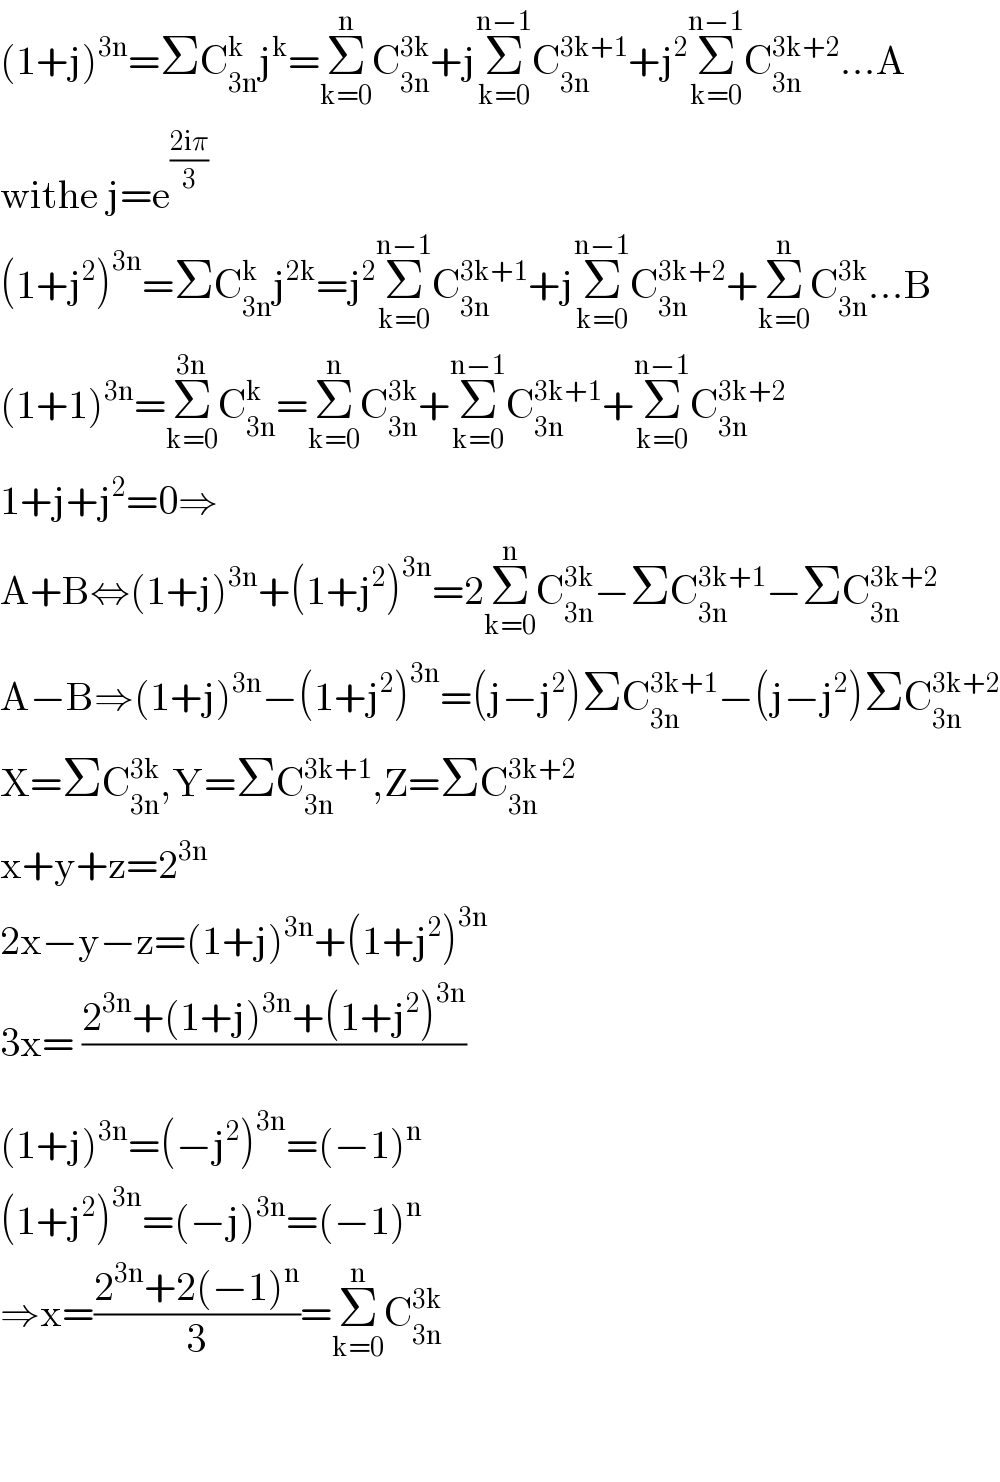 (1+j)^(3n) =ΣC_(3n) ^k j^k =Σ_(k=0) ^n C_(3n) ^(3k) +jΣ_(k=0) ^(n−1) C_(3n) ^(3k+1) +j^2 Σ_(k=0) ^(n−1) C_(3n) ^(3k+2) ...A  withe j=e^((2iπ)/3)   (1+j^2 )^(3n) =ΣC_(3n) ^k j^(2k) =j^2 Σ_(k=0) ^(n−1) C_(3n) ^(3k+1) +jΣ_(k=0) ^(n−1) C_(3n) ^(3k+2) +Σ_(k=0) ^n C_(3n) ^(3k) ...B  (1+1)^(3n) =Σ_(k=0) ^(3n) C_(3n) ^k =Σ_(k=0) ^n C_(3n) ^(3k) +Σ_(k=0) ^(n−1) C_(3n) ^(3k+1) +Σ_(k=0) ^(n−1) C_(3n) ^(3k+2)   1+j+j^2 =0⇒  A+B⇔(1+j)^(3n) +(1+j^2 )^(3n) =2Σ_(k=0) ^n C_(3n) ^(3k) −ΣC_(3n) ^(3k+1) −ΣC_(3n) ^(3k+2)   A−B⇒(1+j)^(3n) −(1+j^2 )^(3n) =(j−j^2 )ΣC_(3n) ^(3k+1) −(j−j^2 )ΣC_(3n) ^(3k+2)   X=ΣC_(3n) ^(3k) ,Y=ΣC_(3n) ^(3k+1) ,Z=ΣC_(3n) ^(3k+2)   x+y+z=2^(3n)   2x−y−z=(1+j)^(3n) +(1+j^2 )^(3n)   3x= ((2^(3n) +(1+j)^(3n) +(1+j^2 )^(3n) )/)  (1+j)^(3n) =(−j^2 )^(3n) =(−1)^n   (1+j^2 )^(3n) =(−j)^(3n) =(−1)^n   ⇒x=((2^(3n) +2(−1)^n )/3)=Σ_(k=0) ^n C_(3n) ^(3k)       